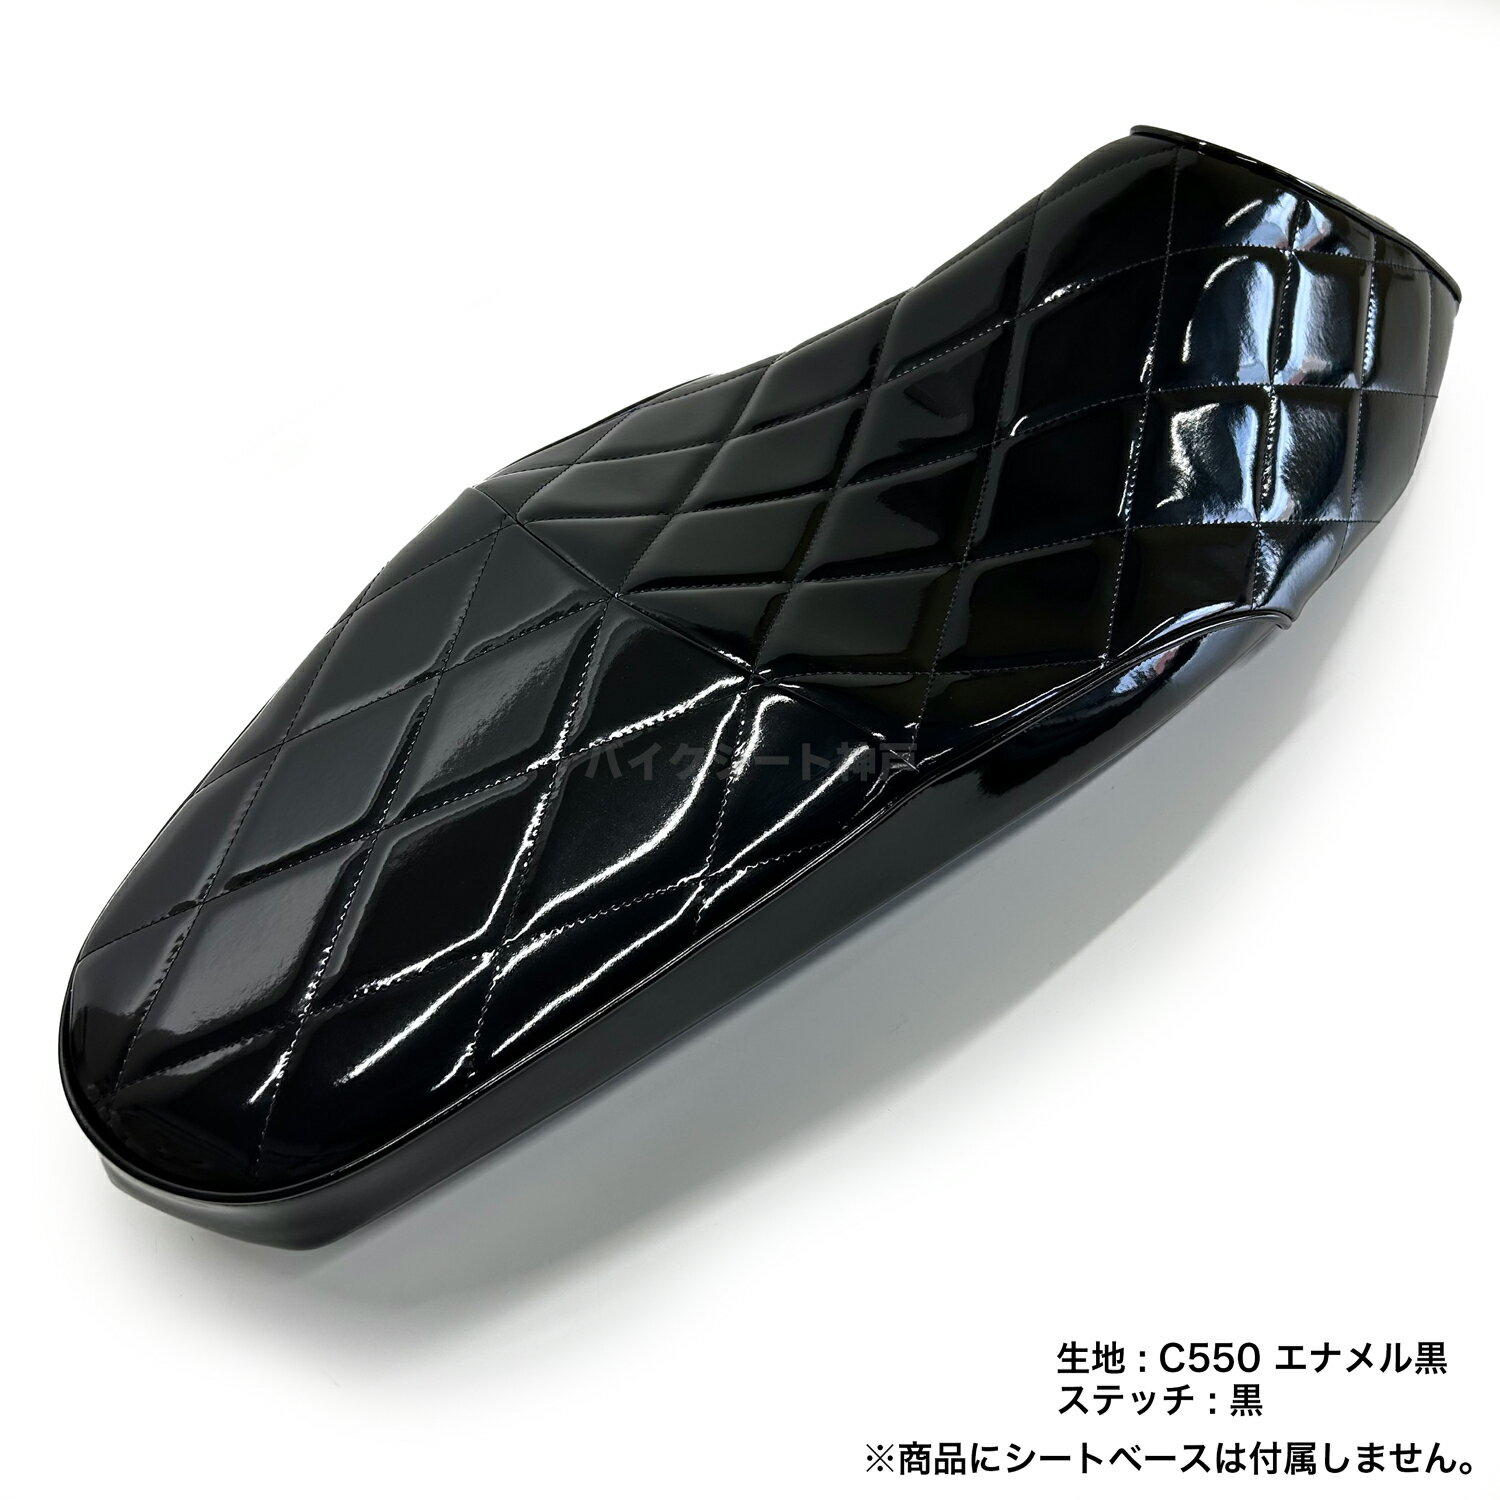 【全て日本製】【項目選択肢あり色変更可能】PCX 125 (JK05) PCX160 (KF47)シート カバー エナメル黒 ダイヤカット ミシンぬい HCH5714 2